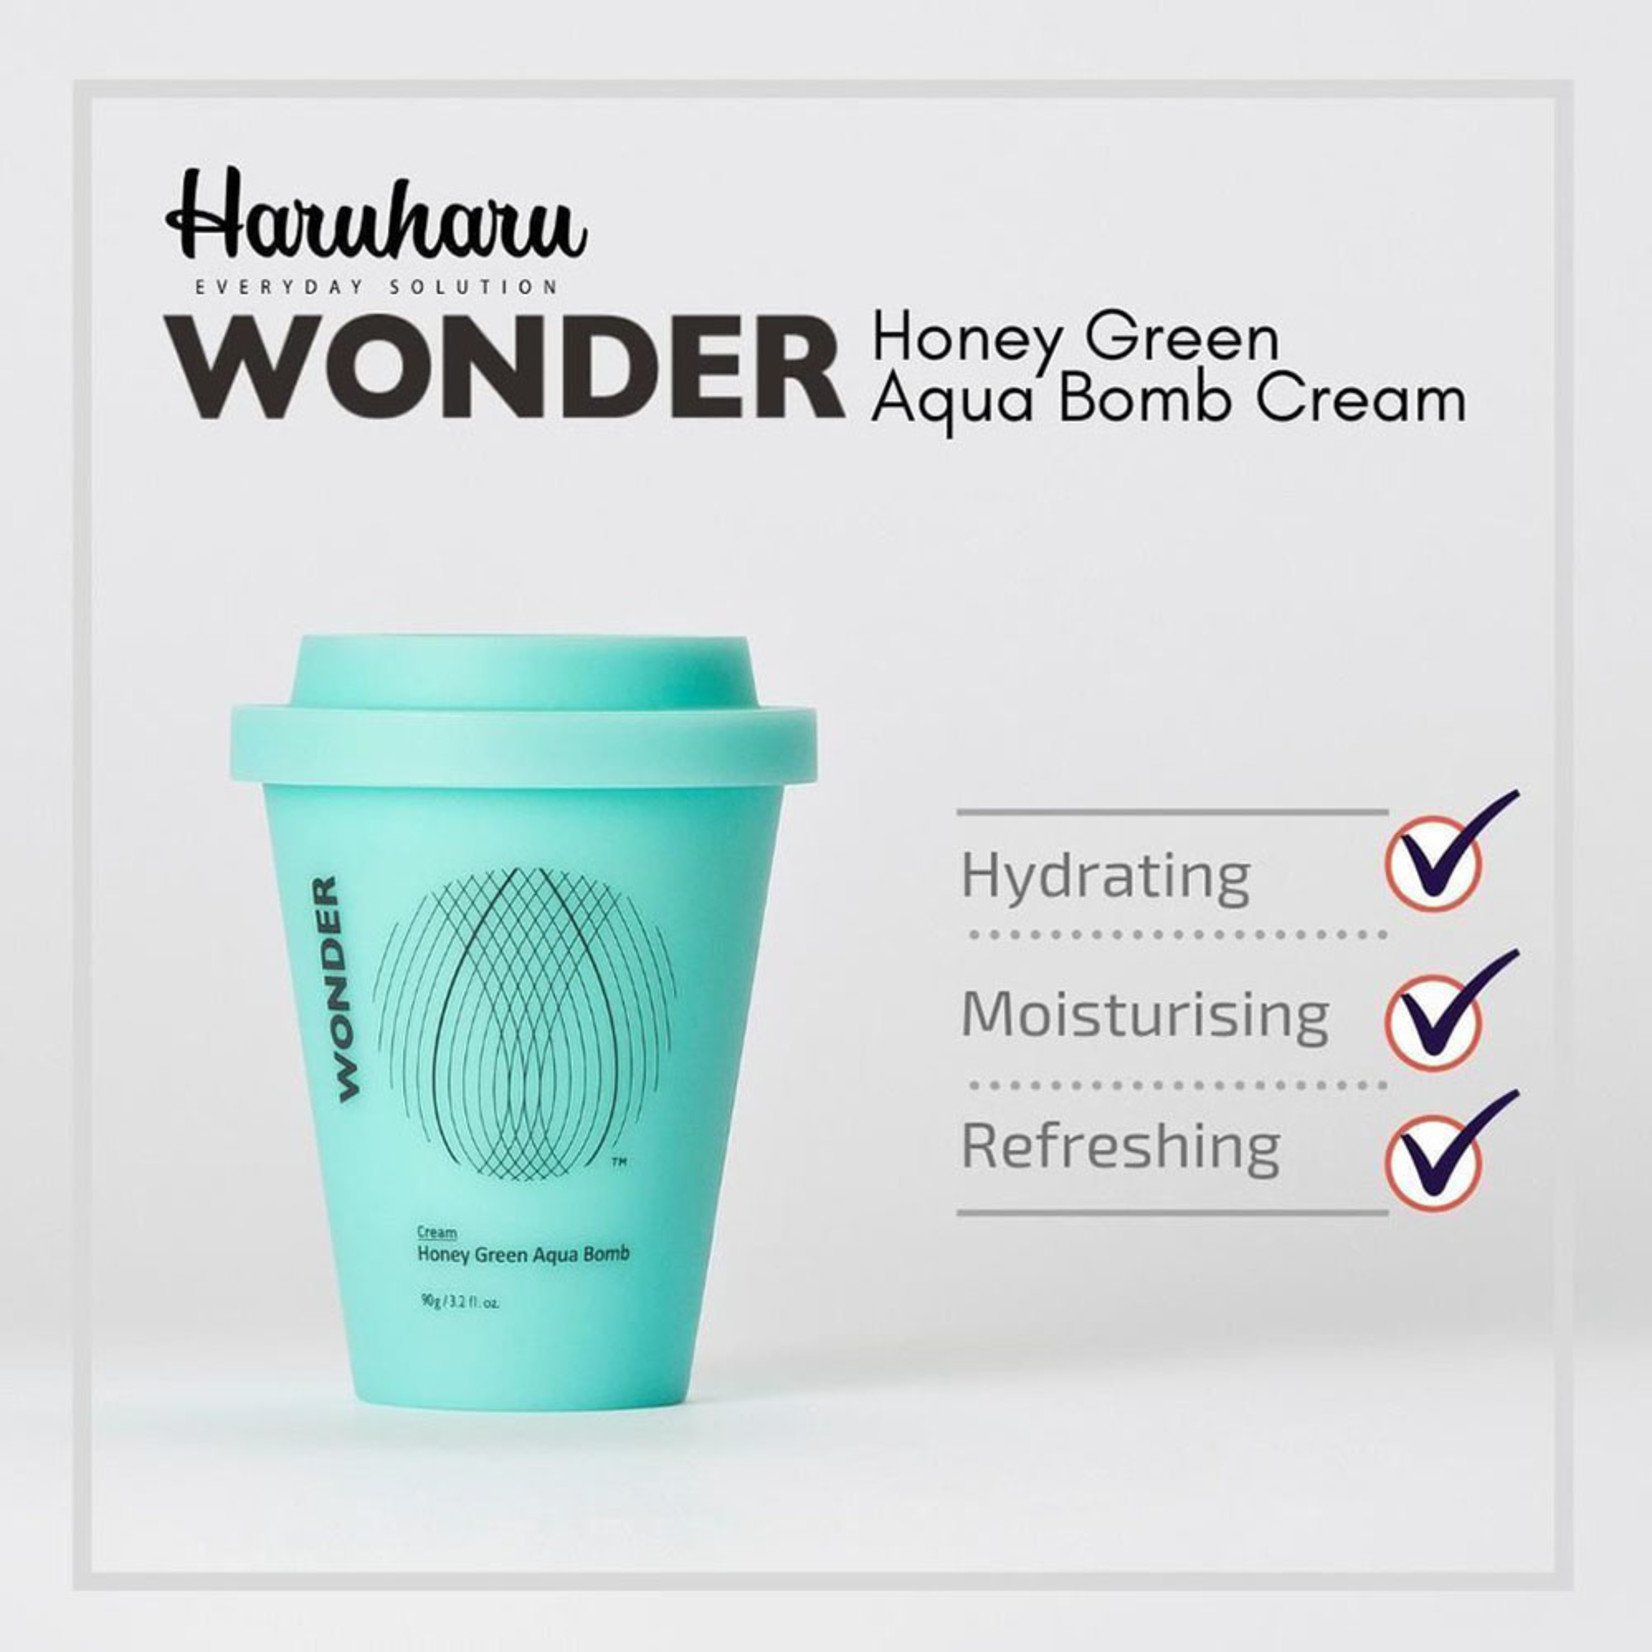 Haruharu Wonder Honey Green Aqua Bomb Cream